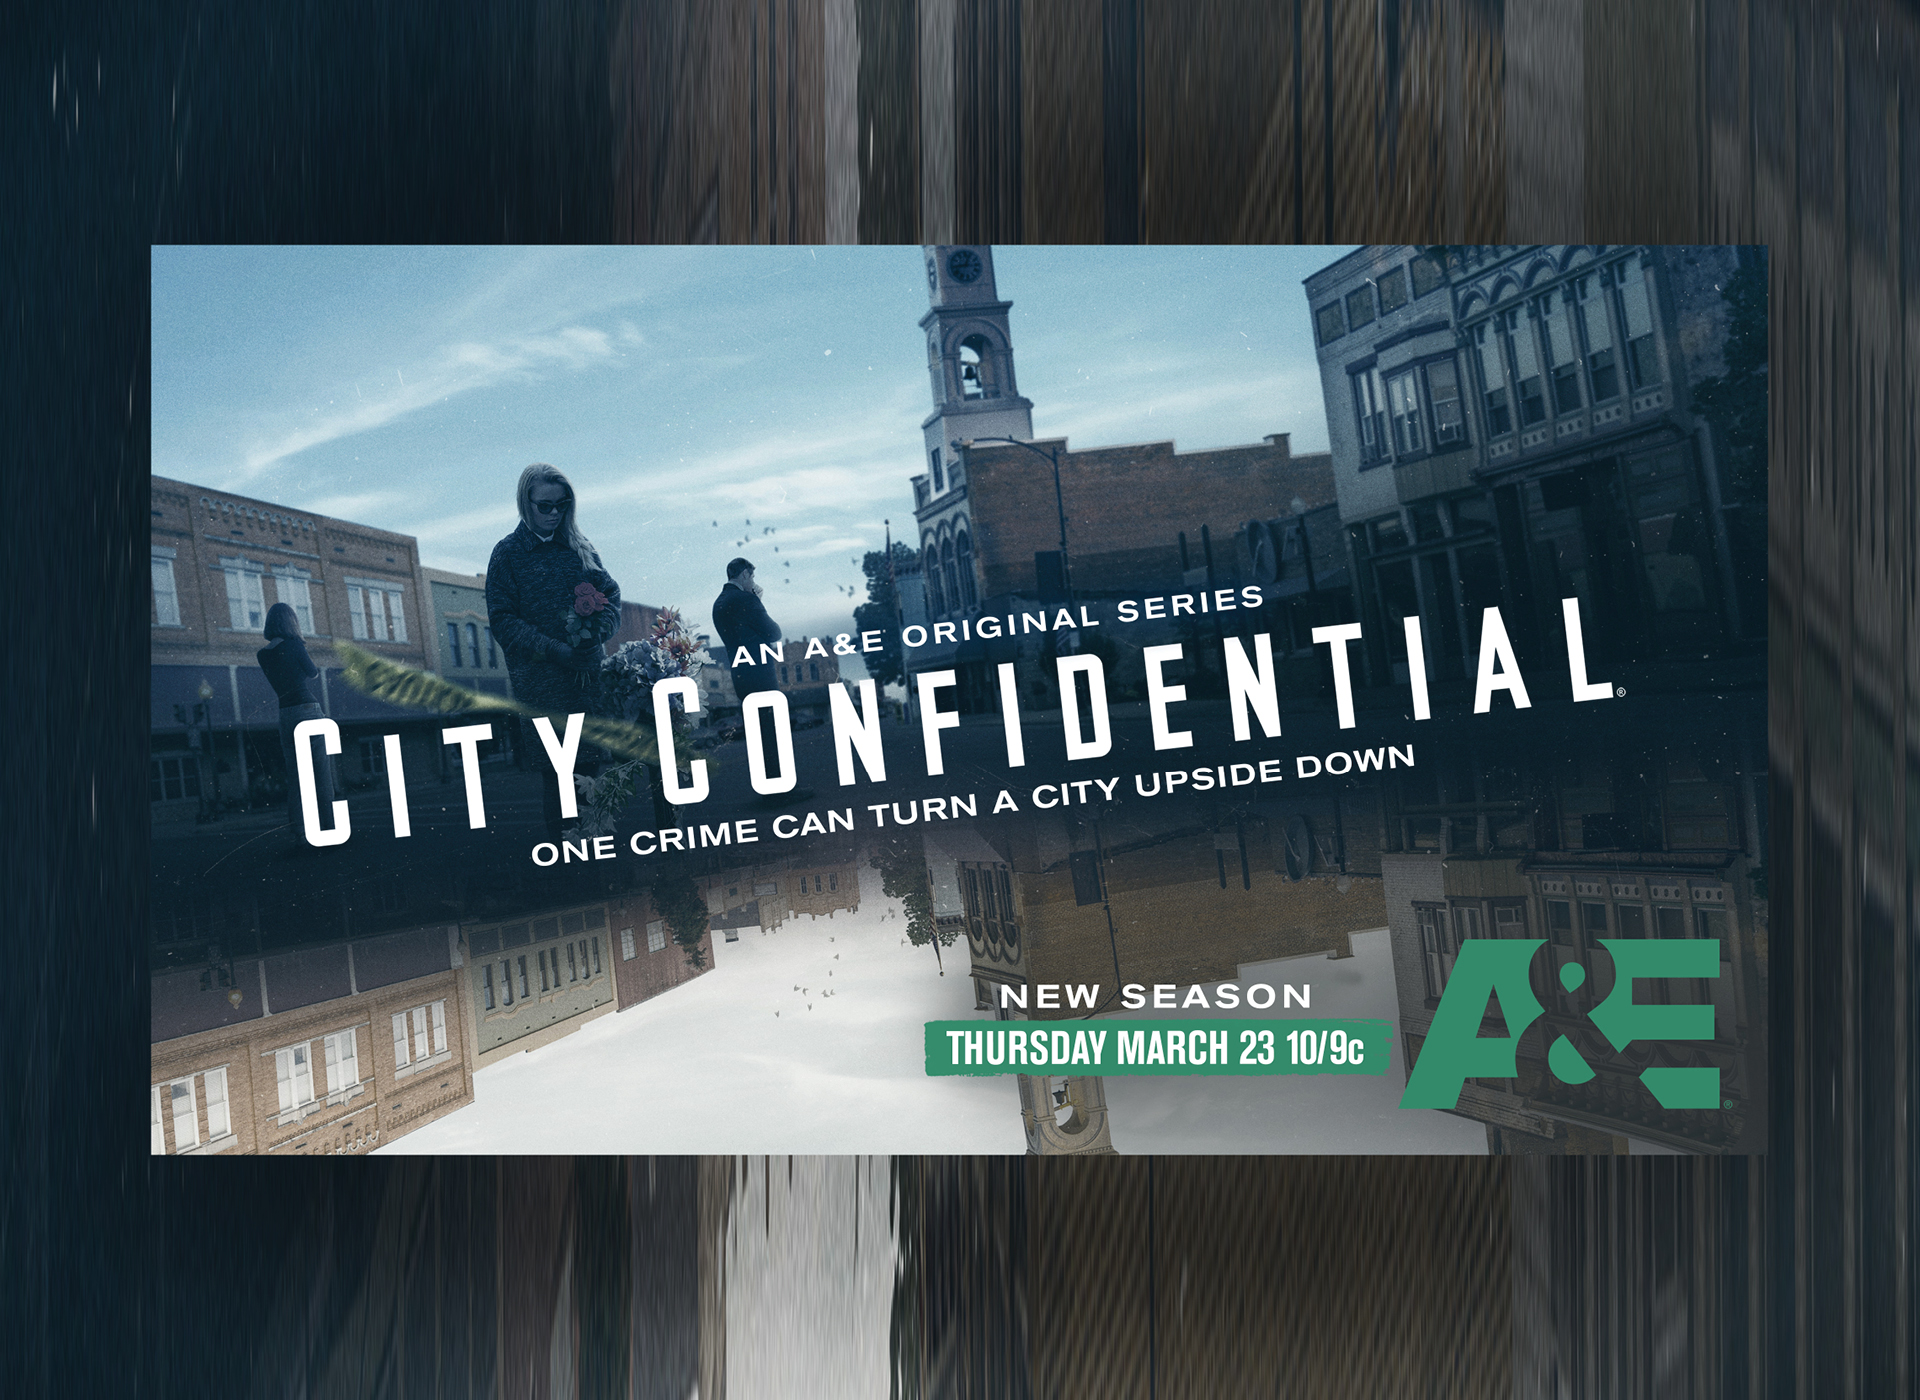 A&E City Confidential marketing image